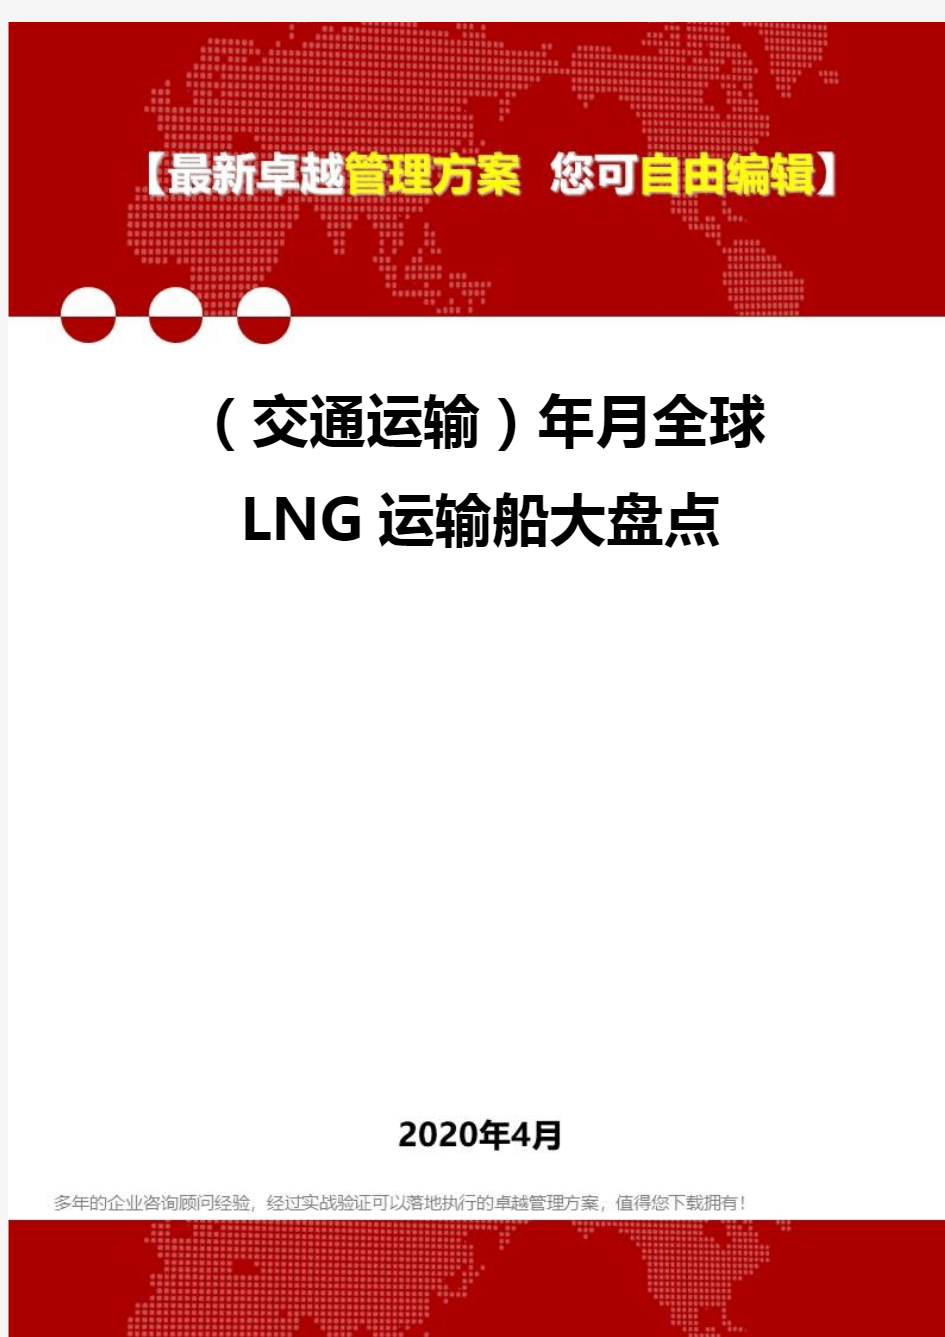 (交通运输)年月全球LNG运输船大盘点